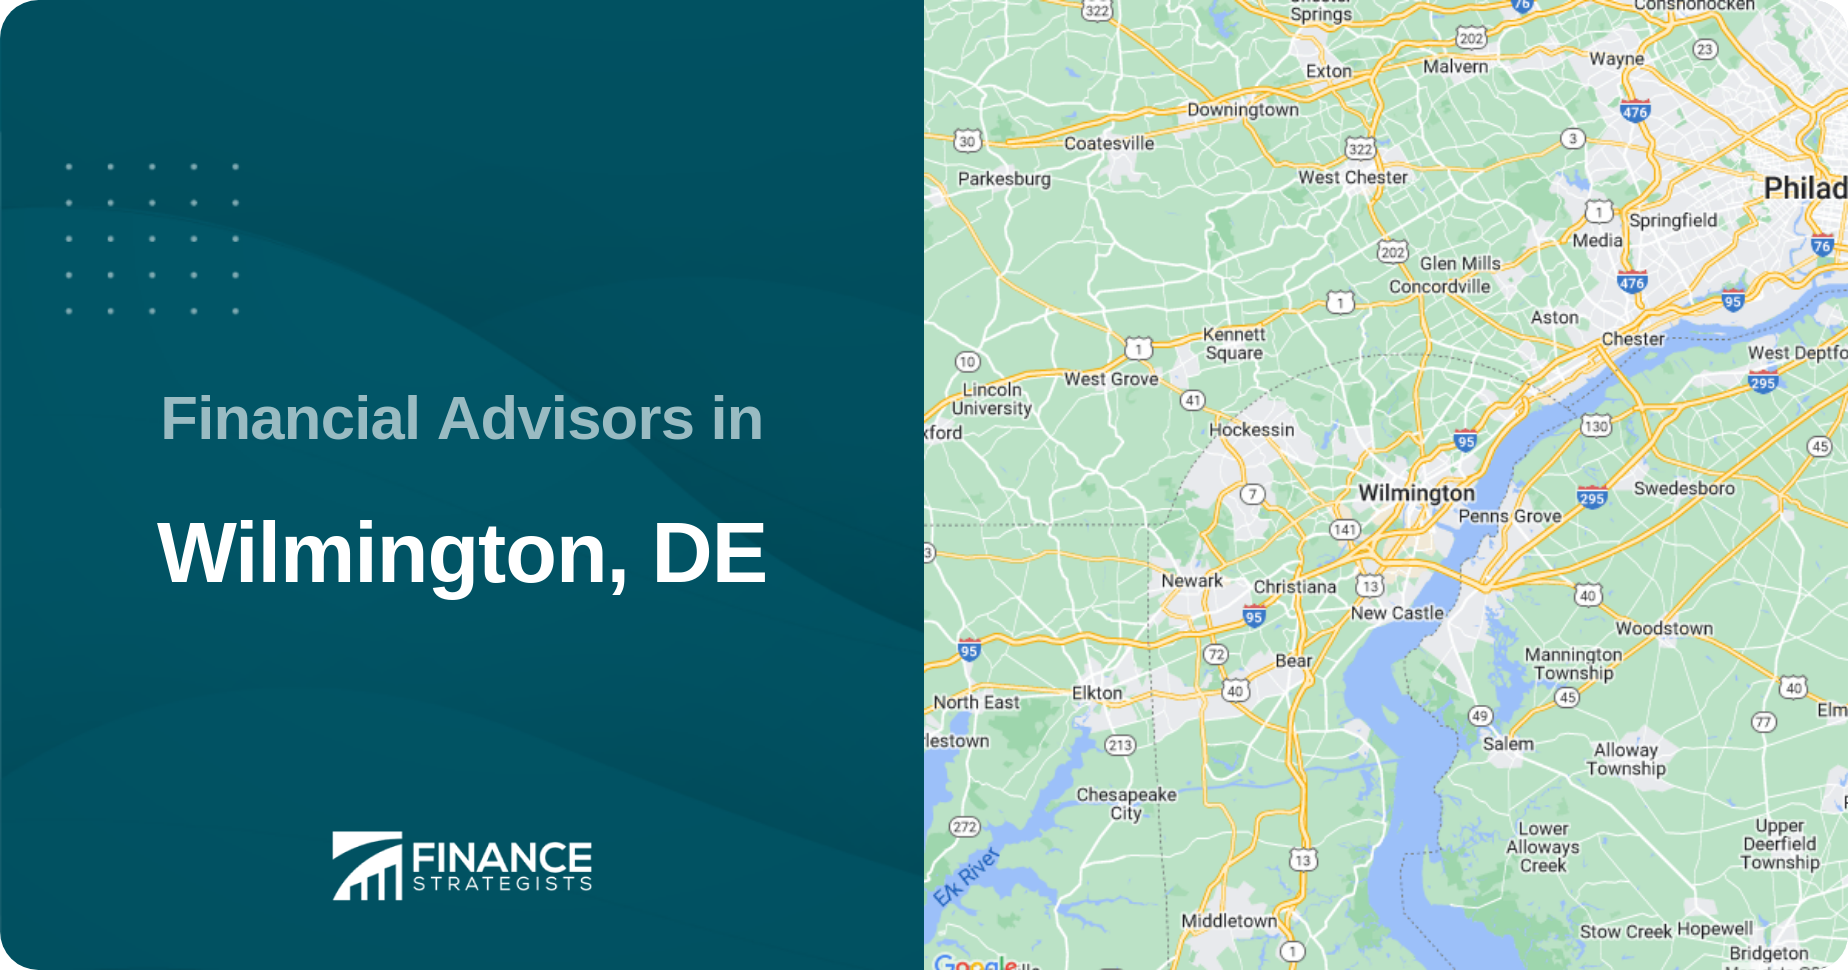 Financial Advisors in Wilmington, DE